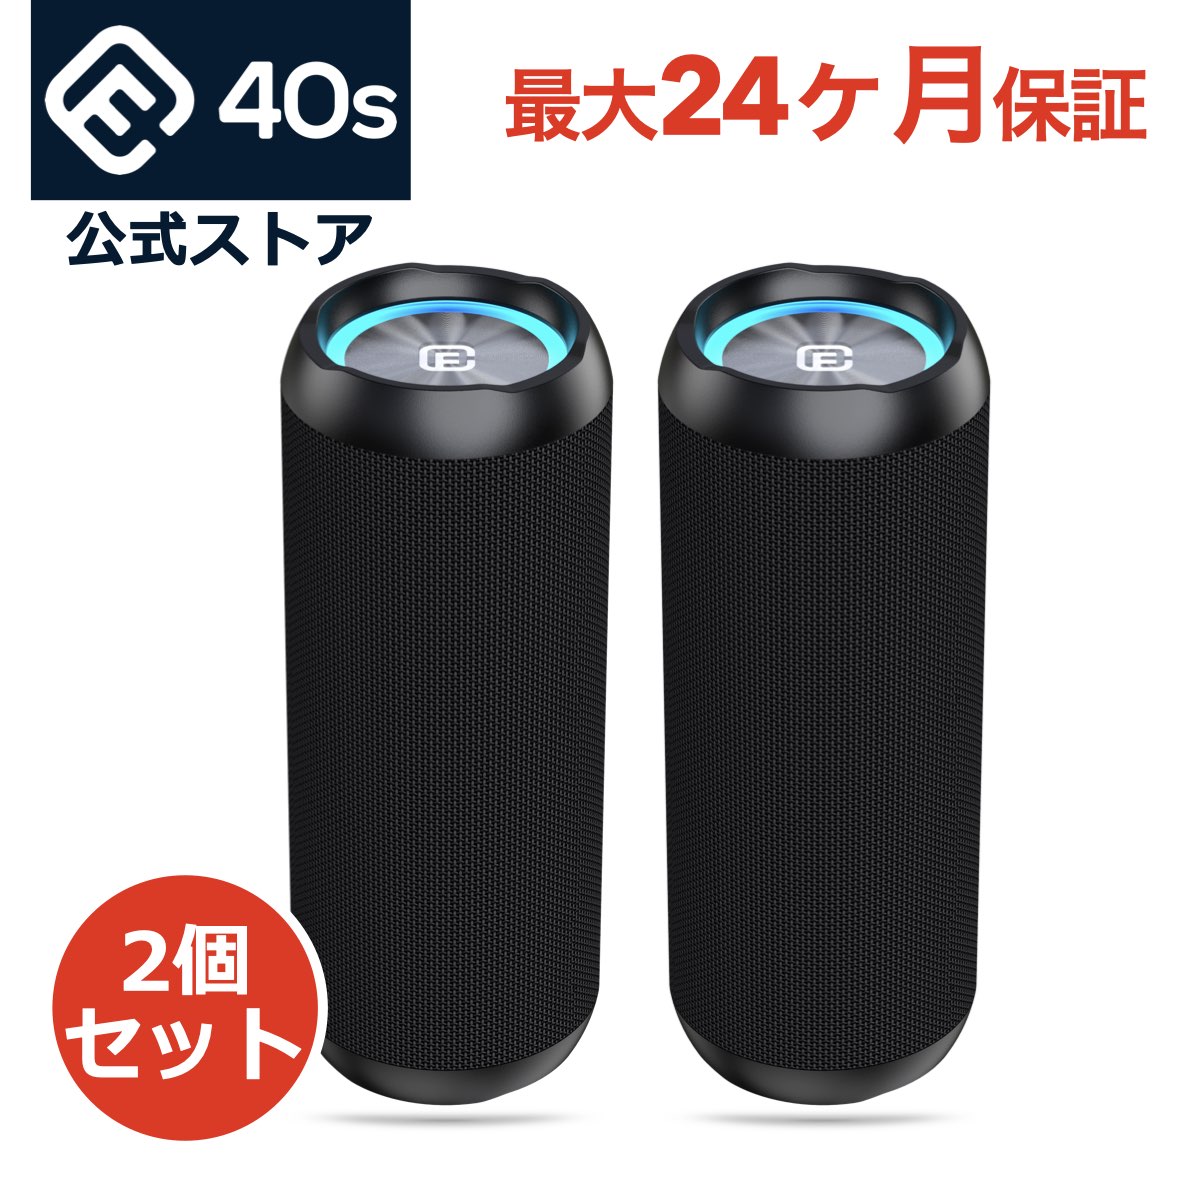 【50時間再生】Bluetoothスピーカー 2台セット 防